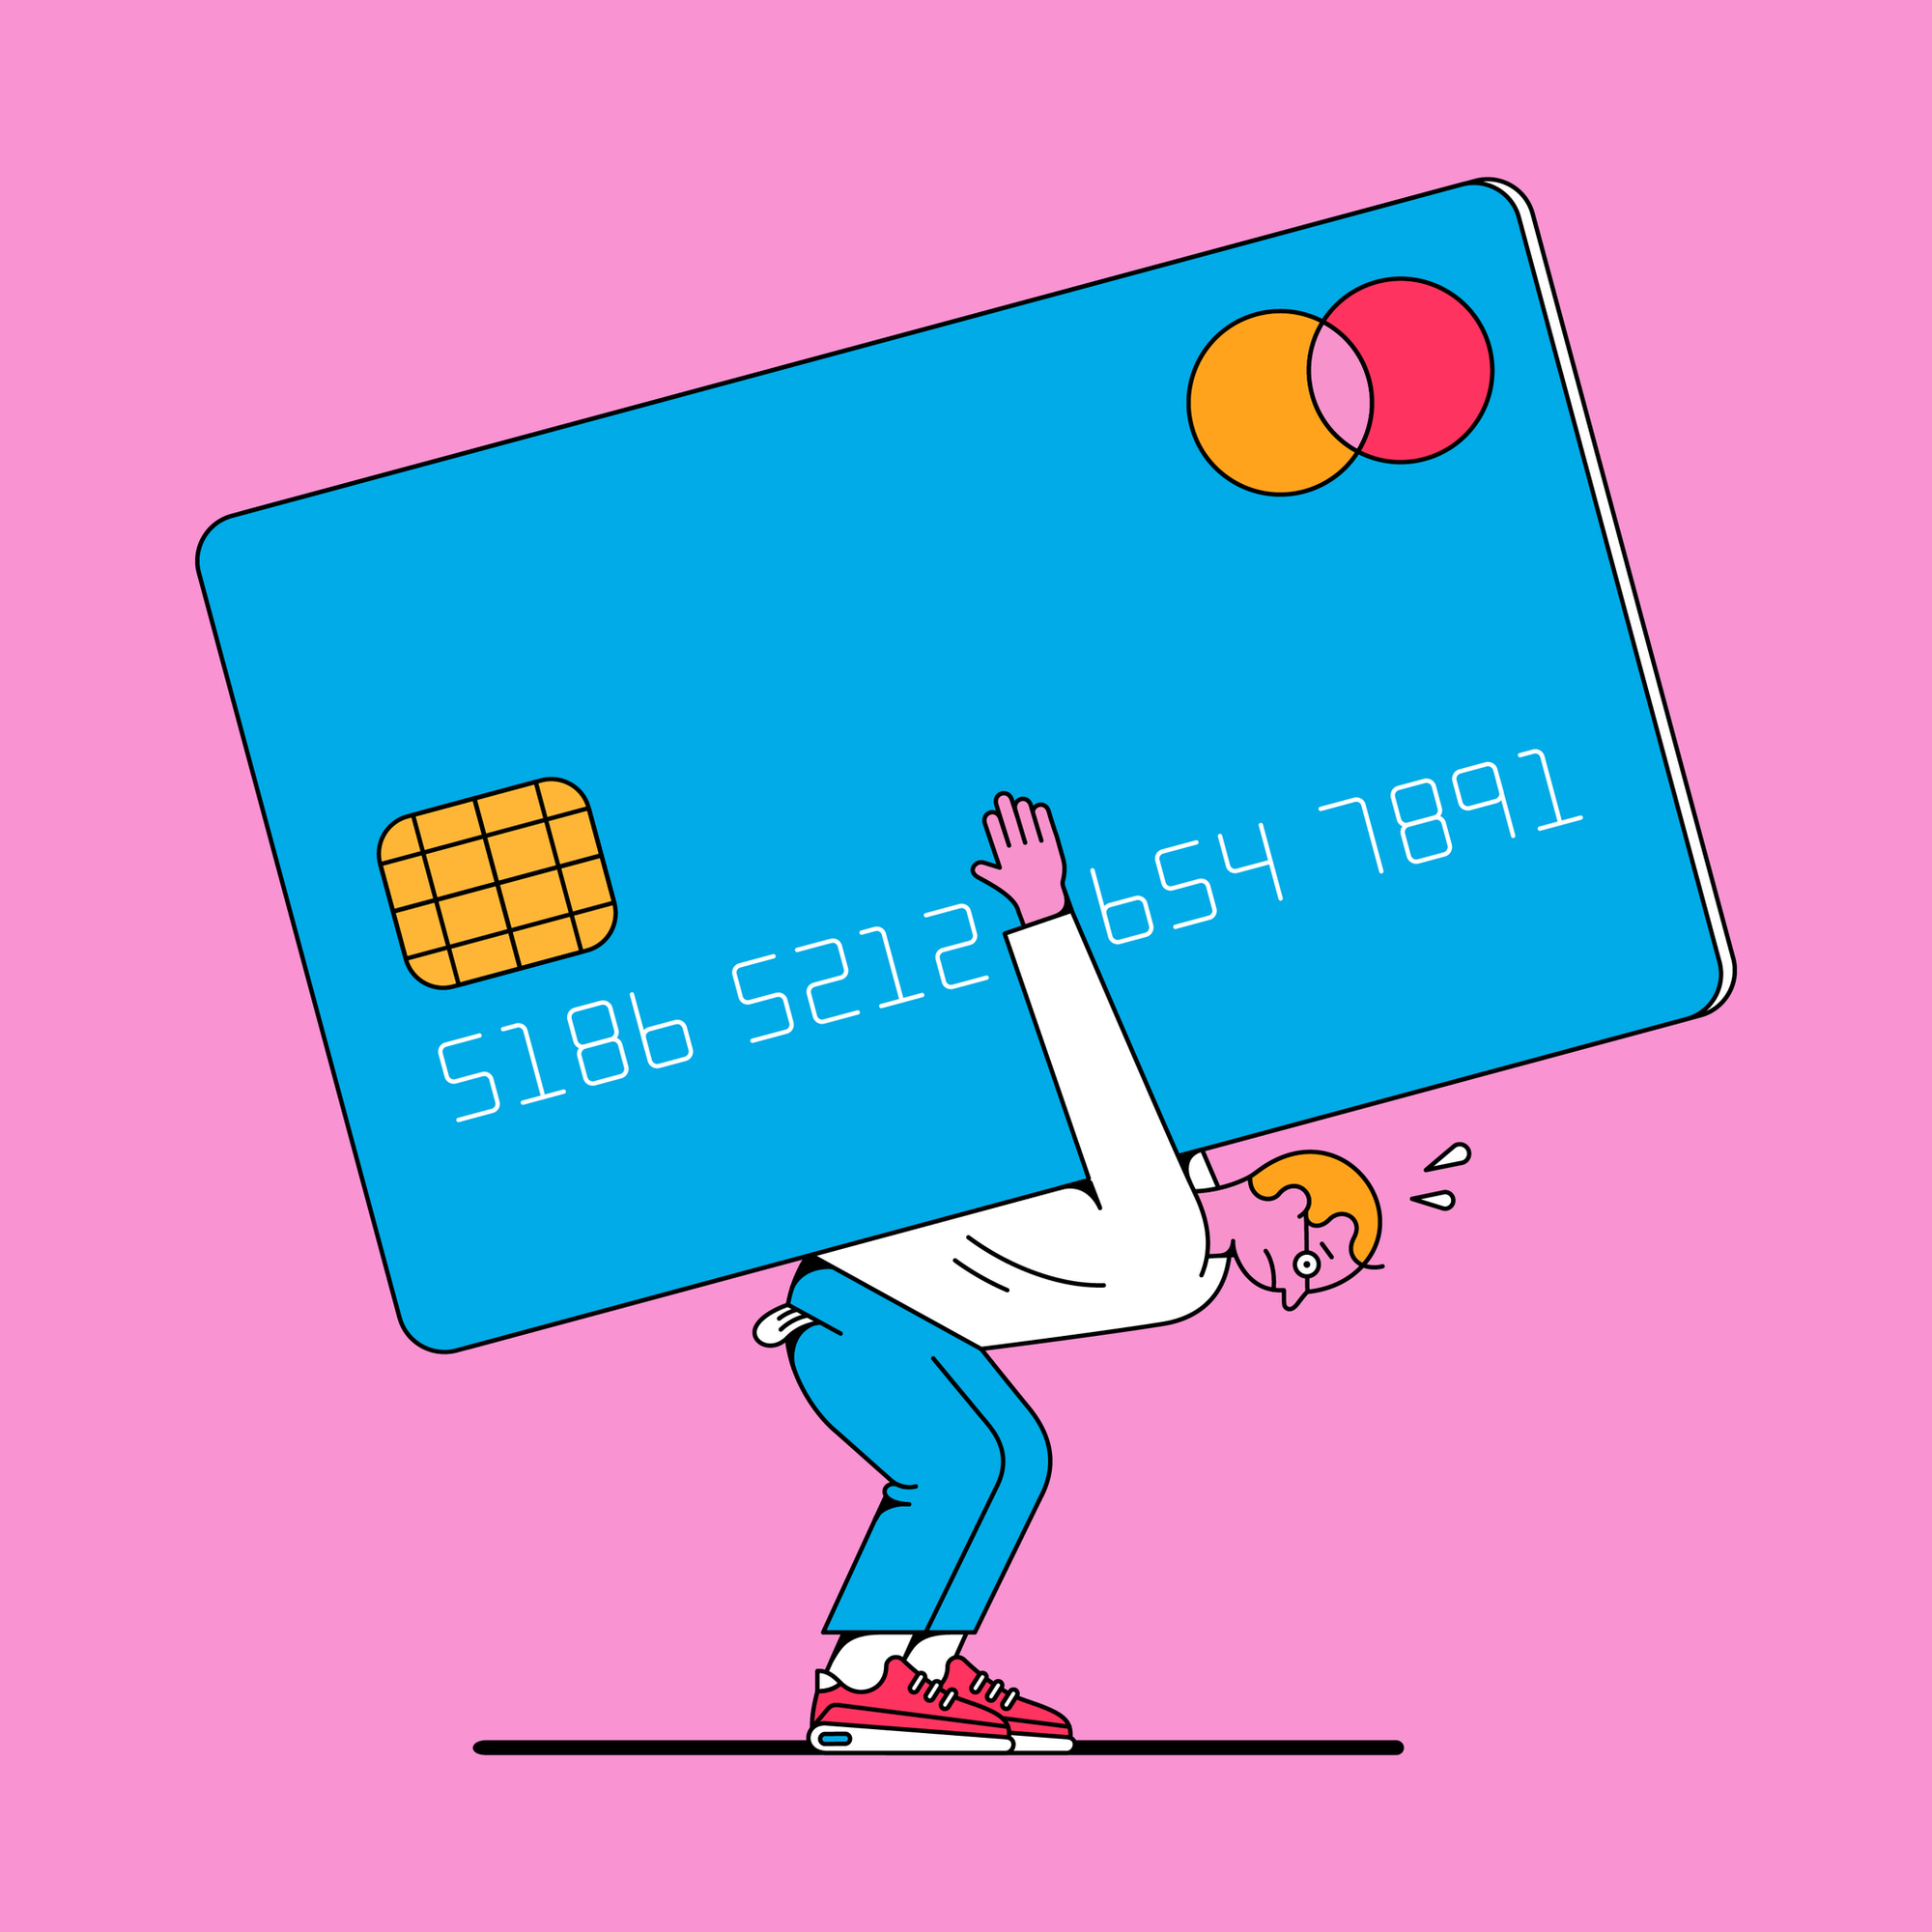 Dùng thẻ tín dụng không bao giờ sợ ngập trong nợ nếu biết 3 bí kíp này - Ảnh 2.